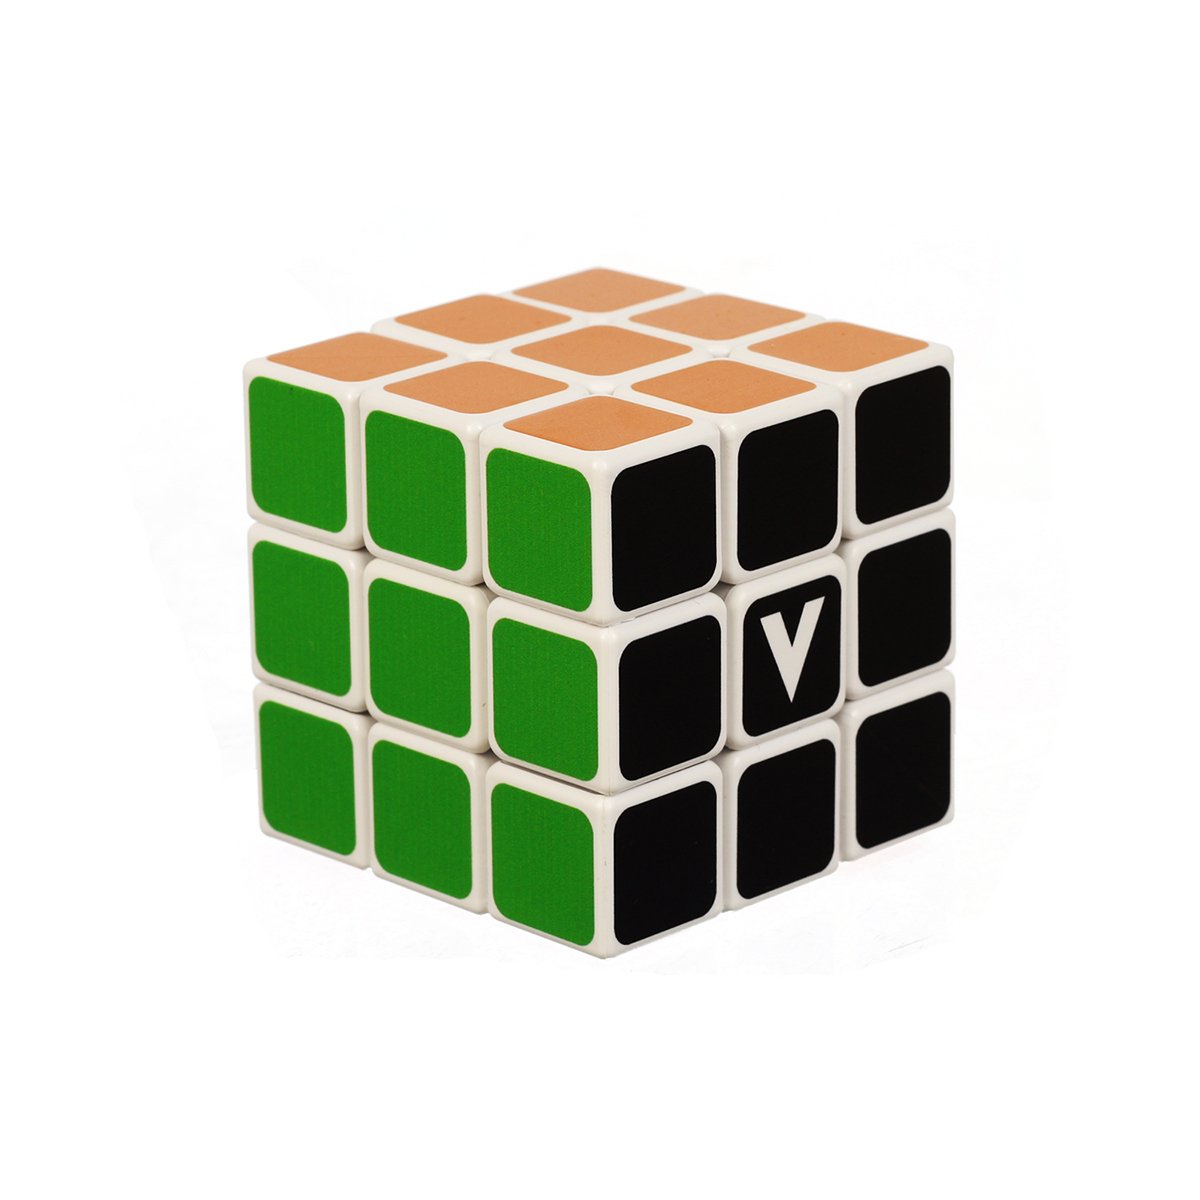 P cube. Диагональный кубик 3 3. Типовой кубик p. Куб 3 на 3 белый. Куб 3v.